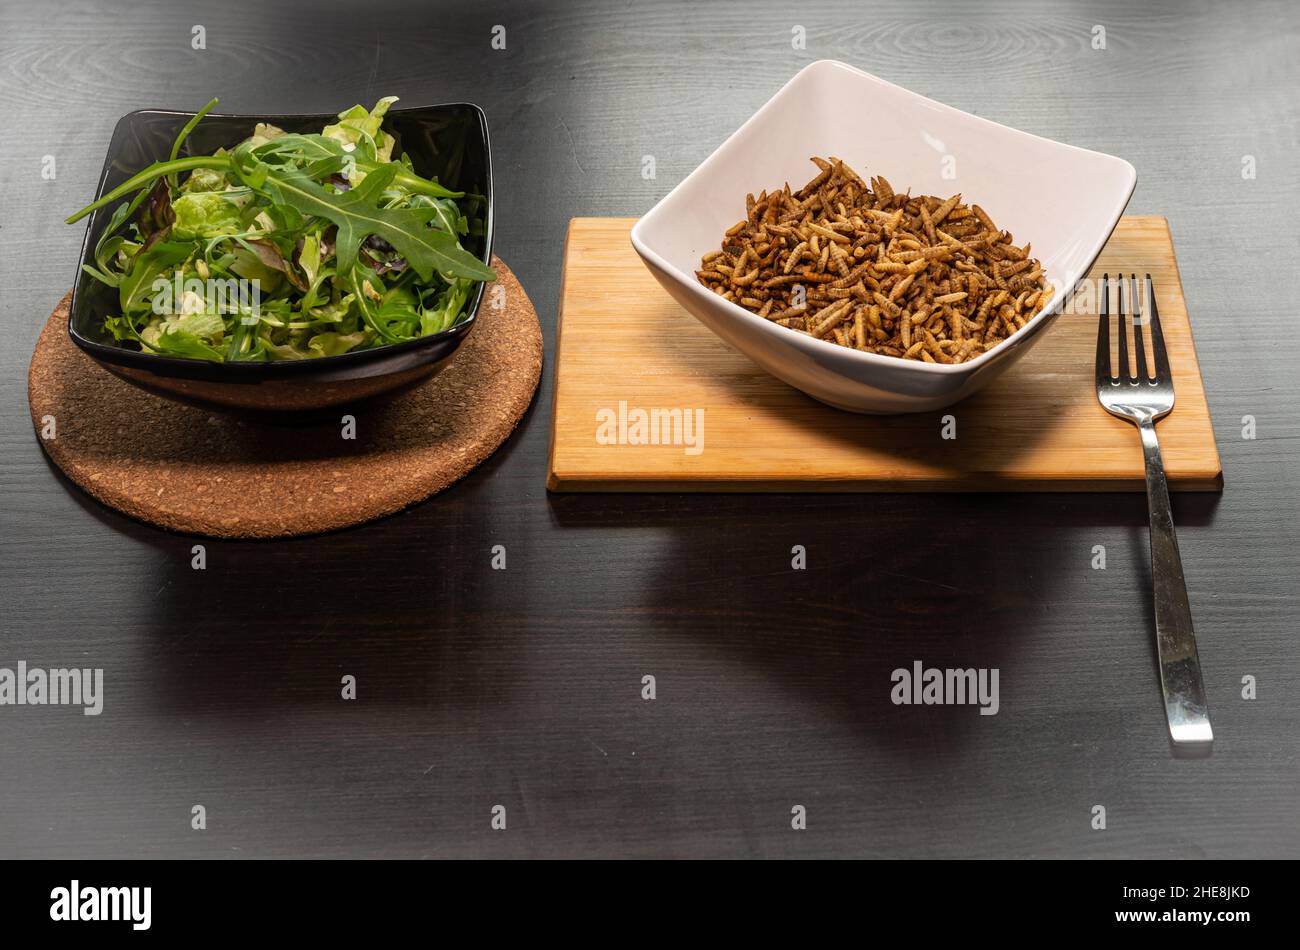 Gericht aus Mehlwürmern und Salat, Konzept der alternativen Proteinquelle aus essbaren Insekten Stockfoto